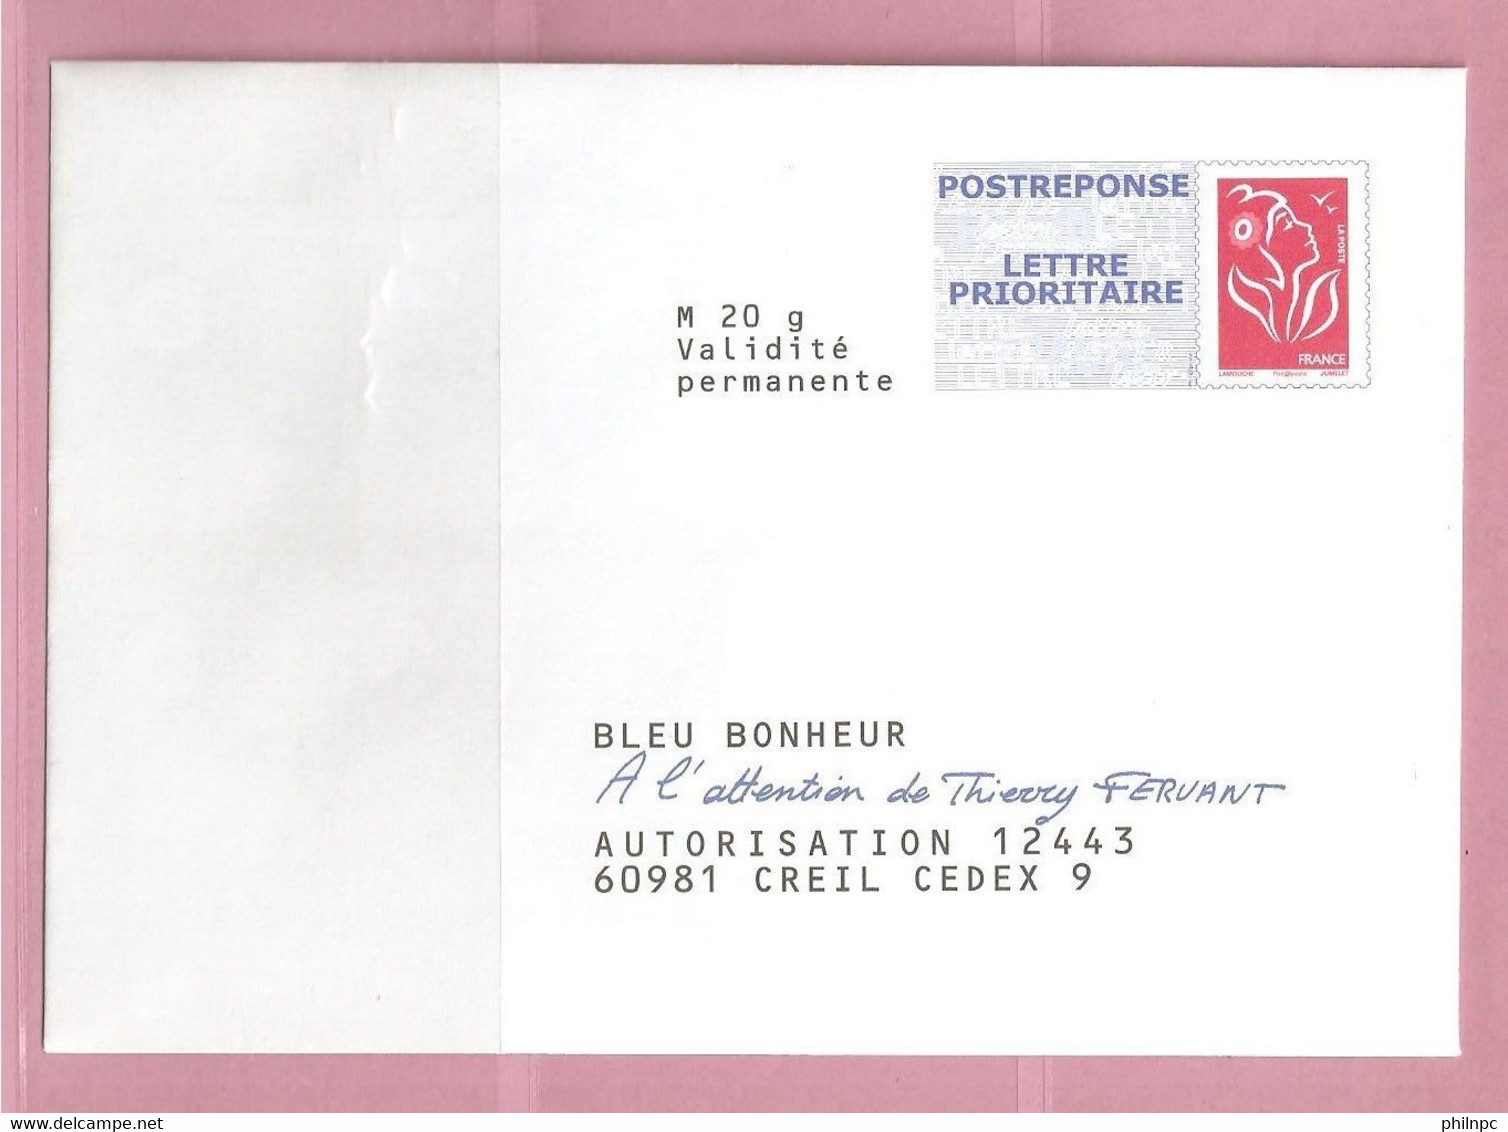 France, Prêt à Poster Réponse, 3734A, Postréponse, Bleu Bonheur, Marianne De Lamouche - PAP : Antwoord /Lamouche